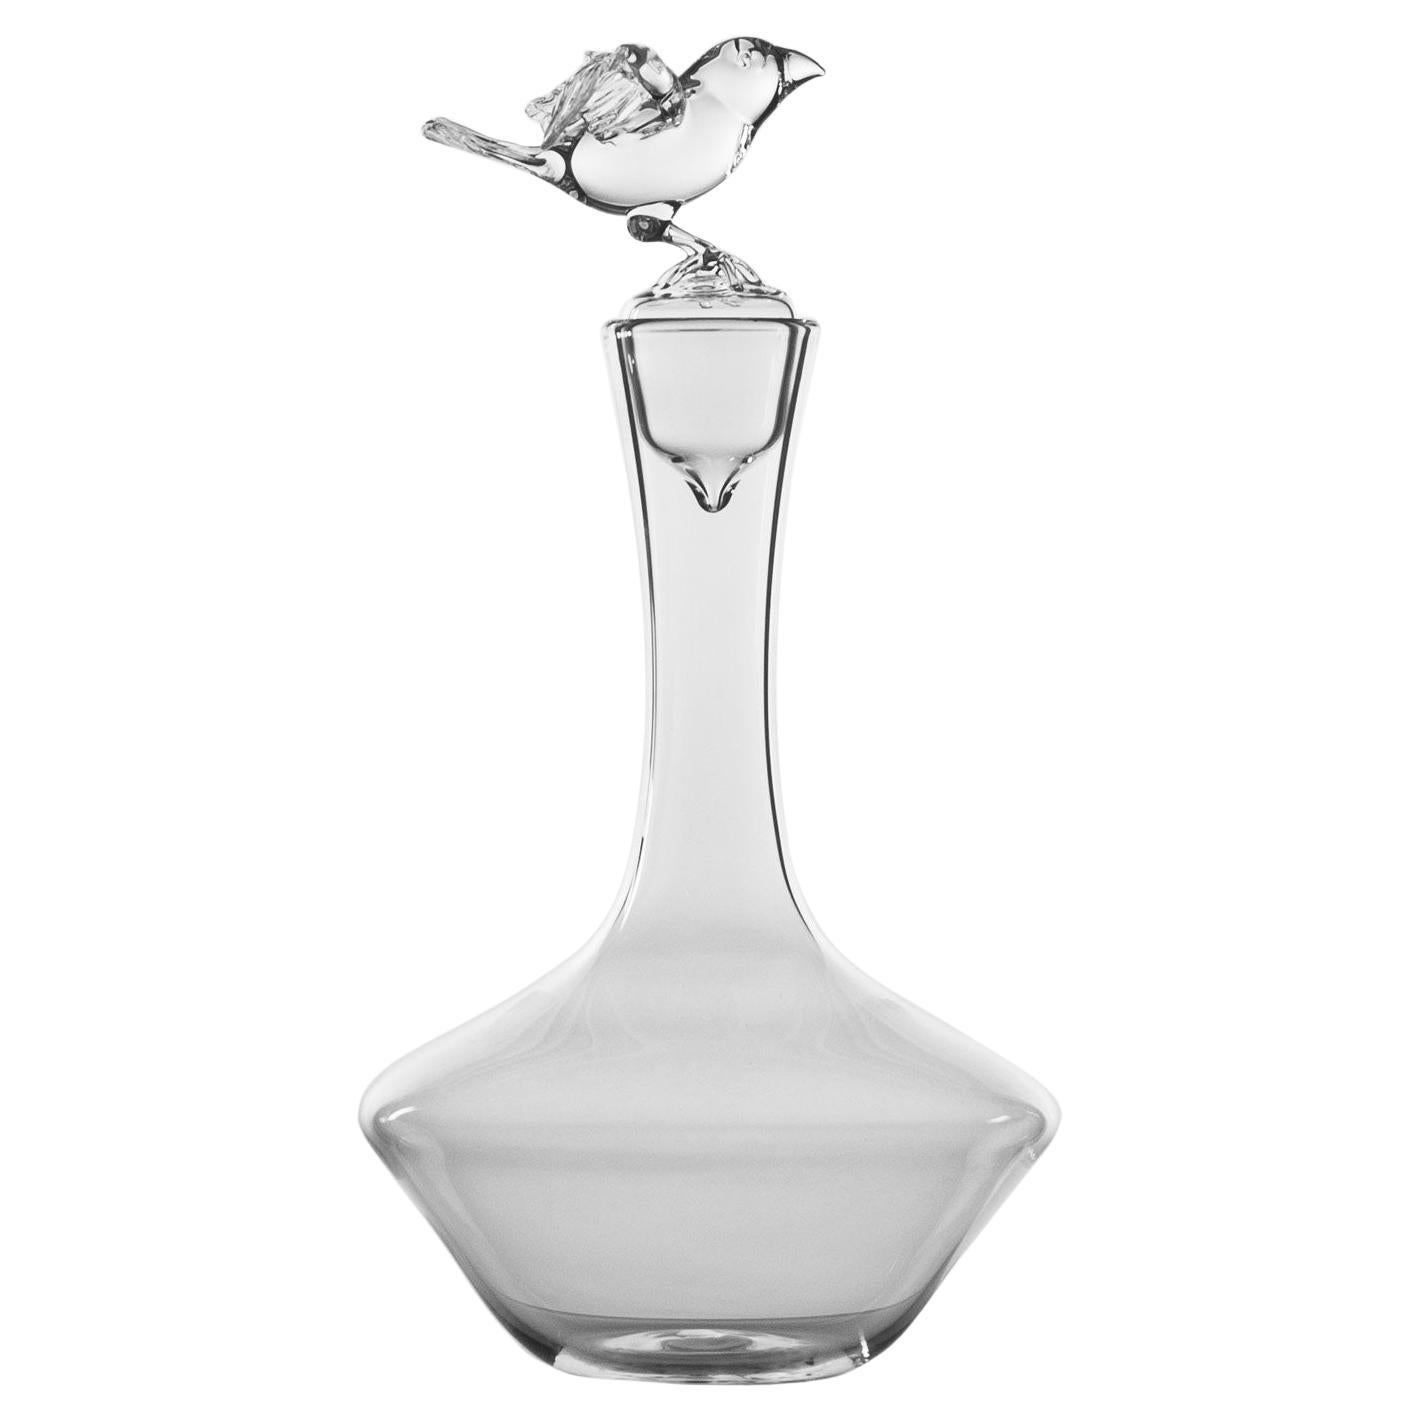 La bouteille en verre soufflé à la main « Bird Bottle » de Simone Crestani